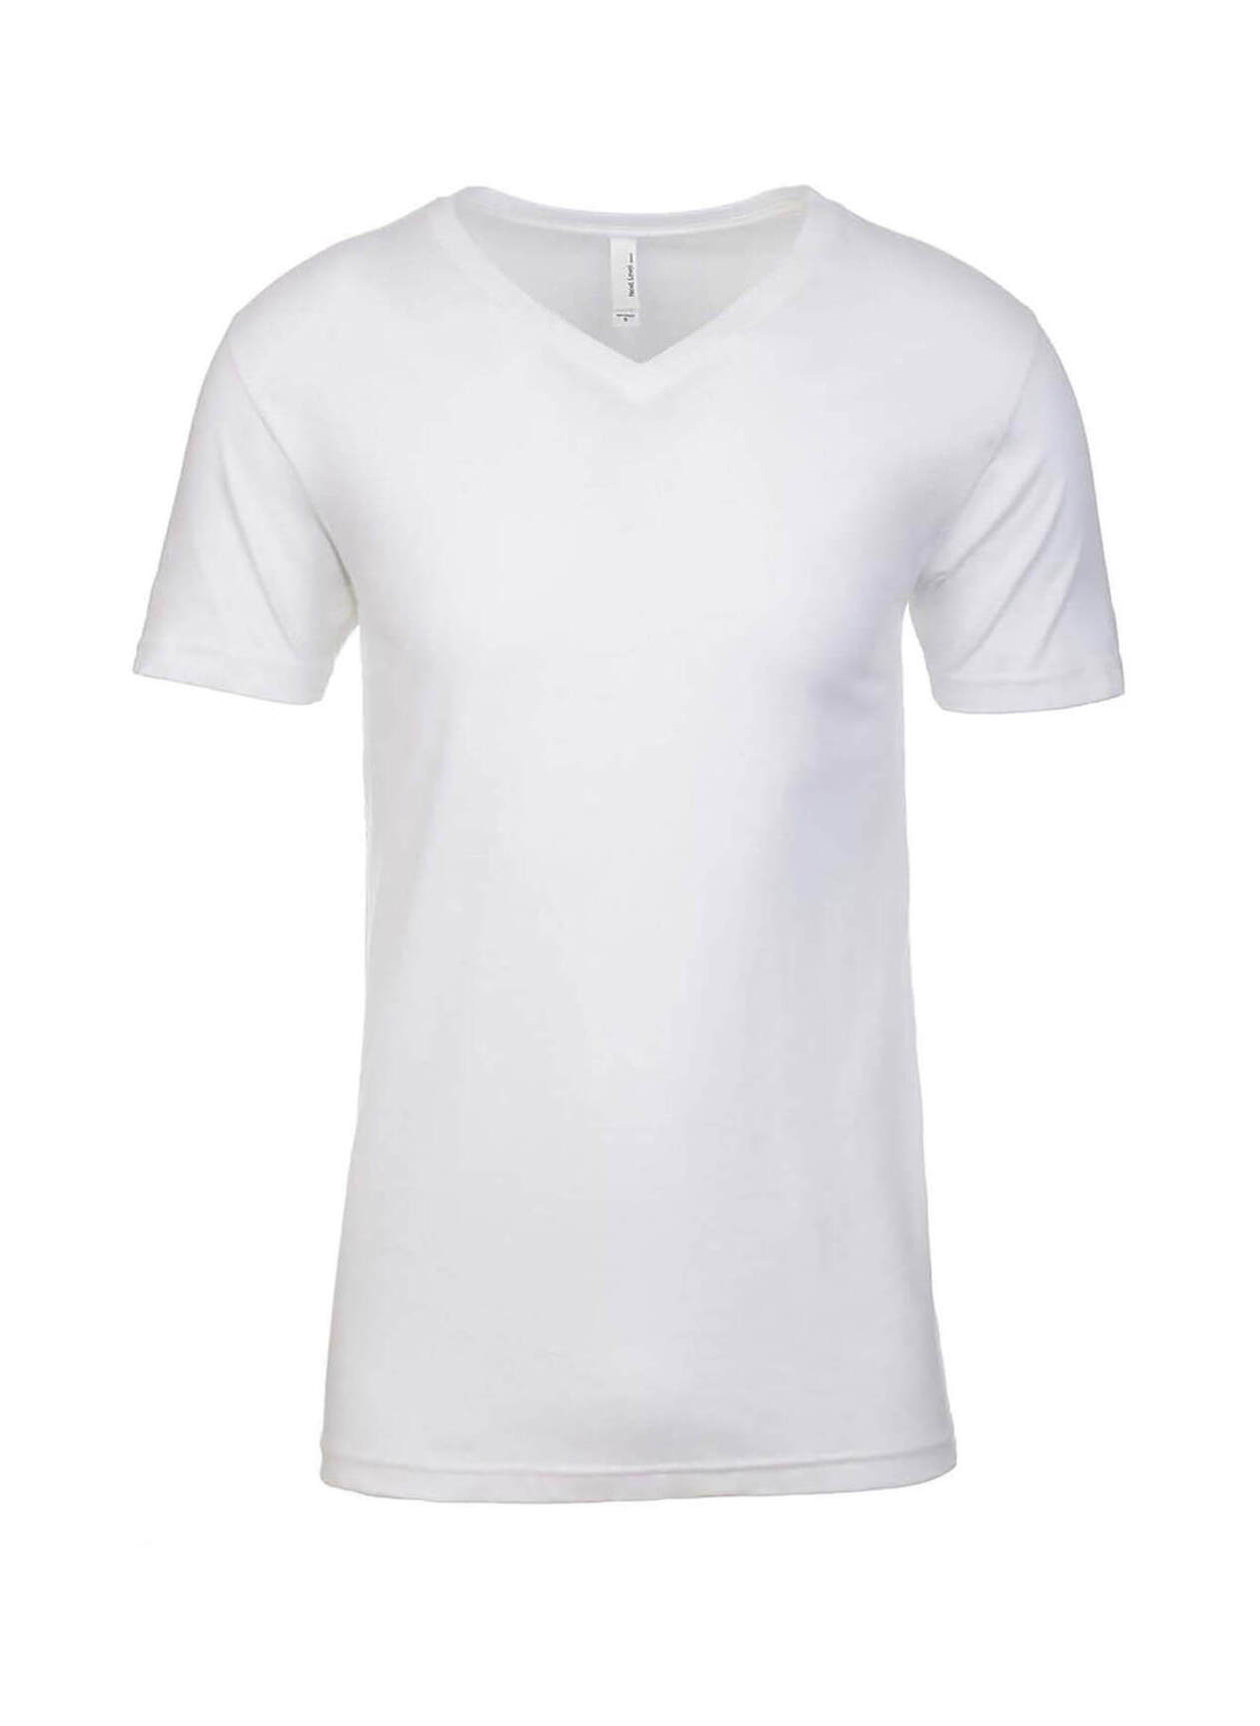 Next Level Men's White CVC V-Neck T-Shirt